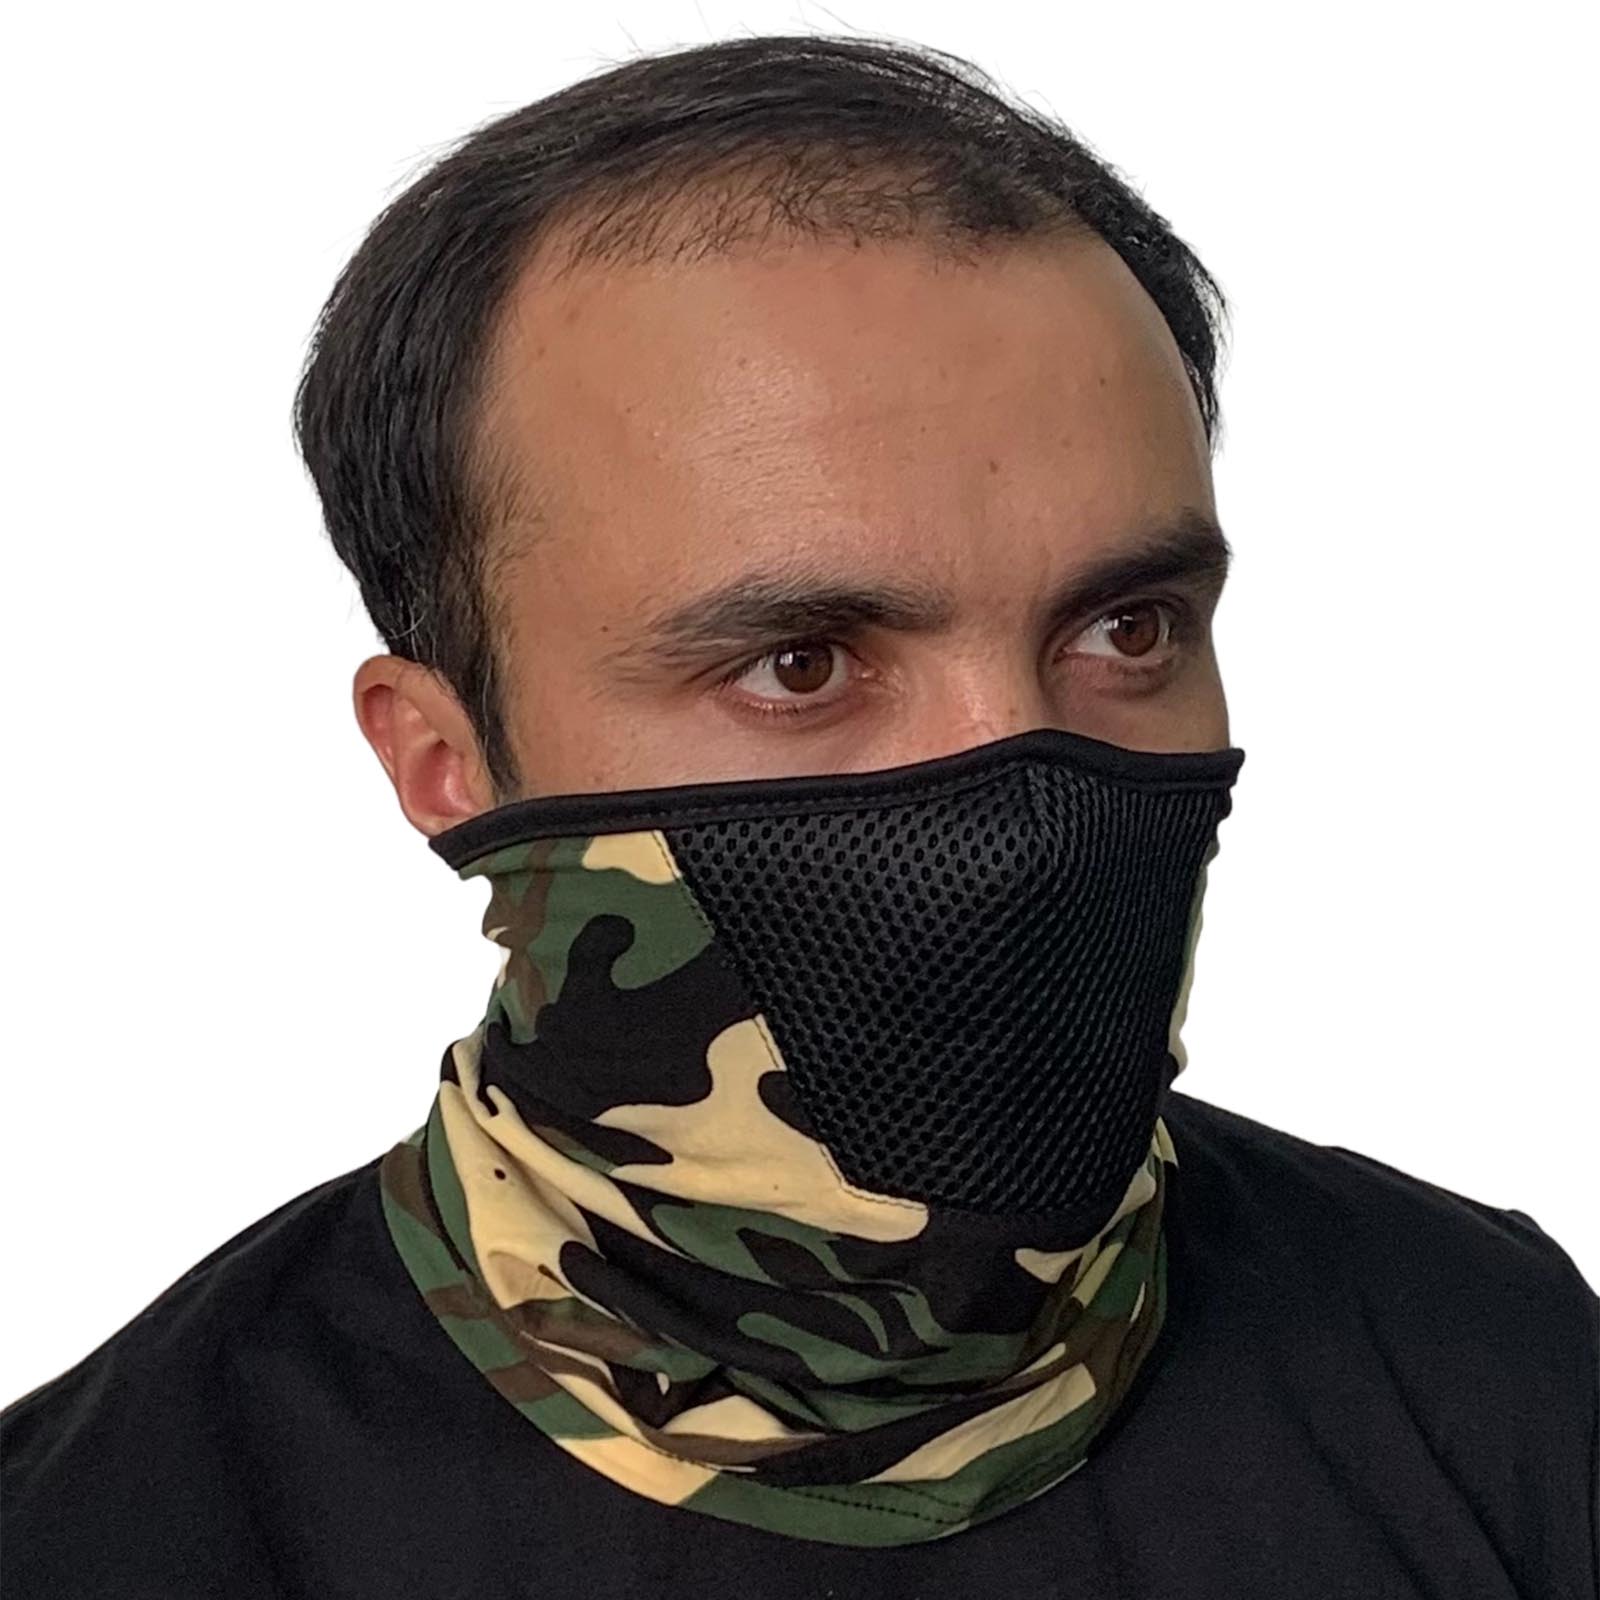 Купить шарф-маску для спорта по низкой цене в интернет-магазине Военпро с доставкой по Москве, РФ, СНГ.